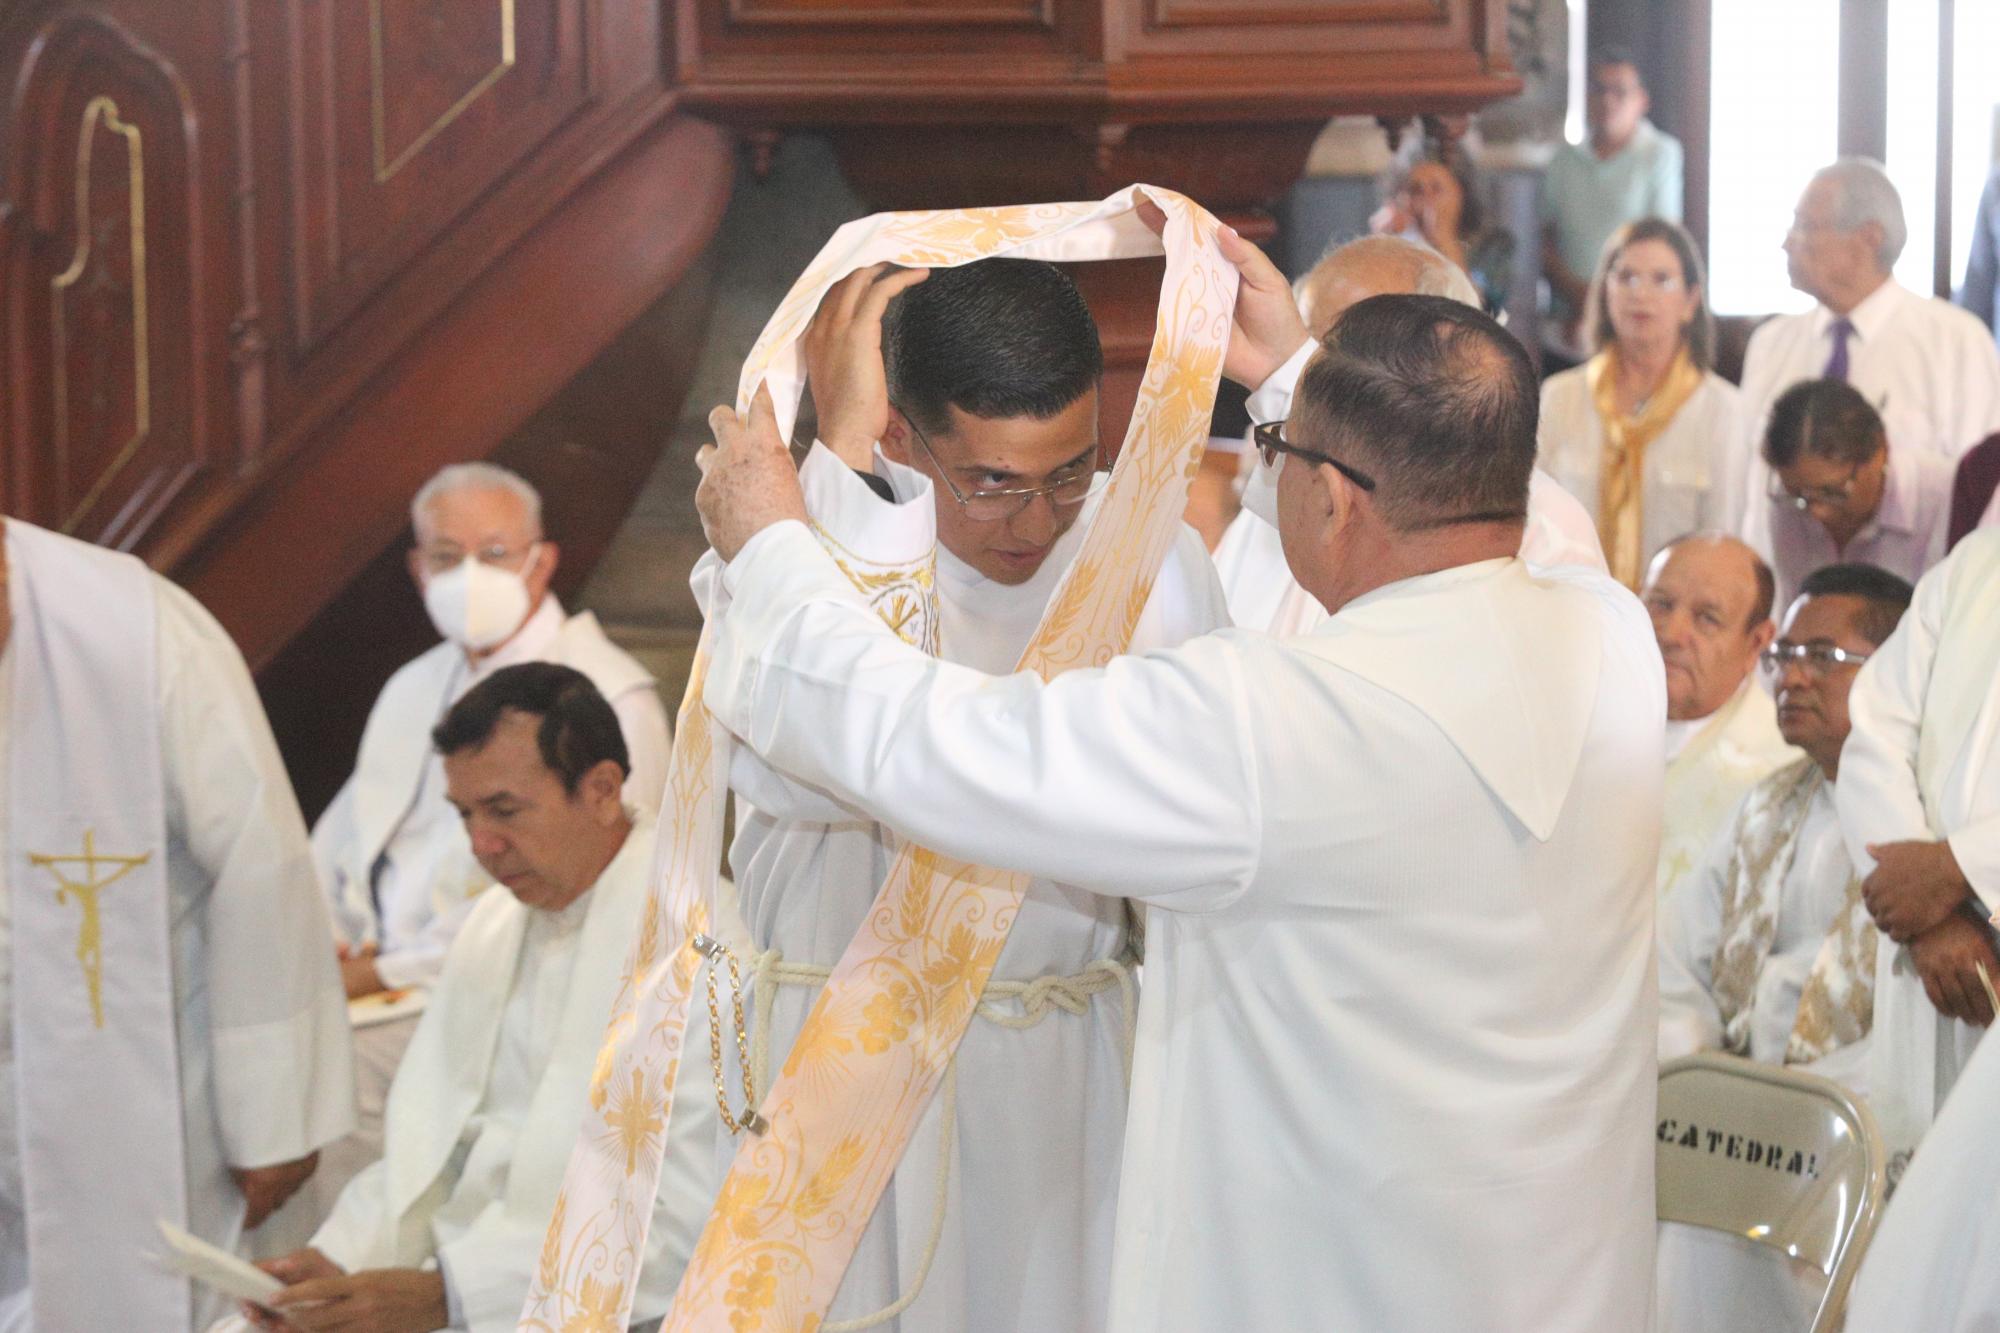 $!Después de su ordenación José Alberto Ortega Navarro recibió la dalmática diaconal de manos del Padre Gustavo Diaz Ruiz, rector del Seminario Diocesano de Mazatlán.